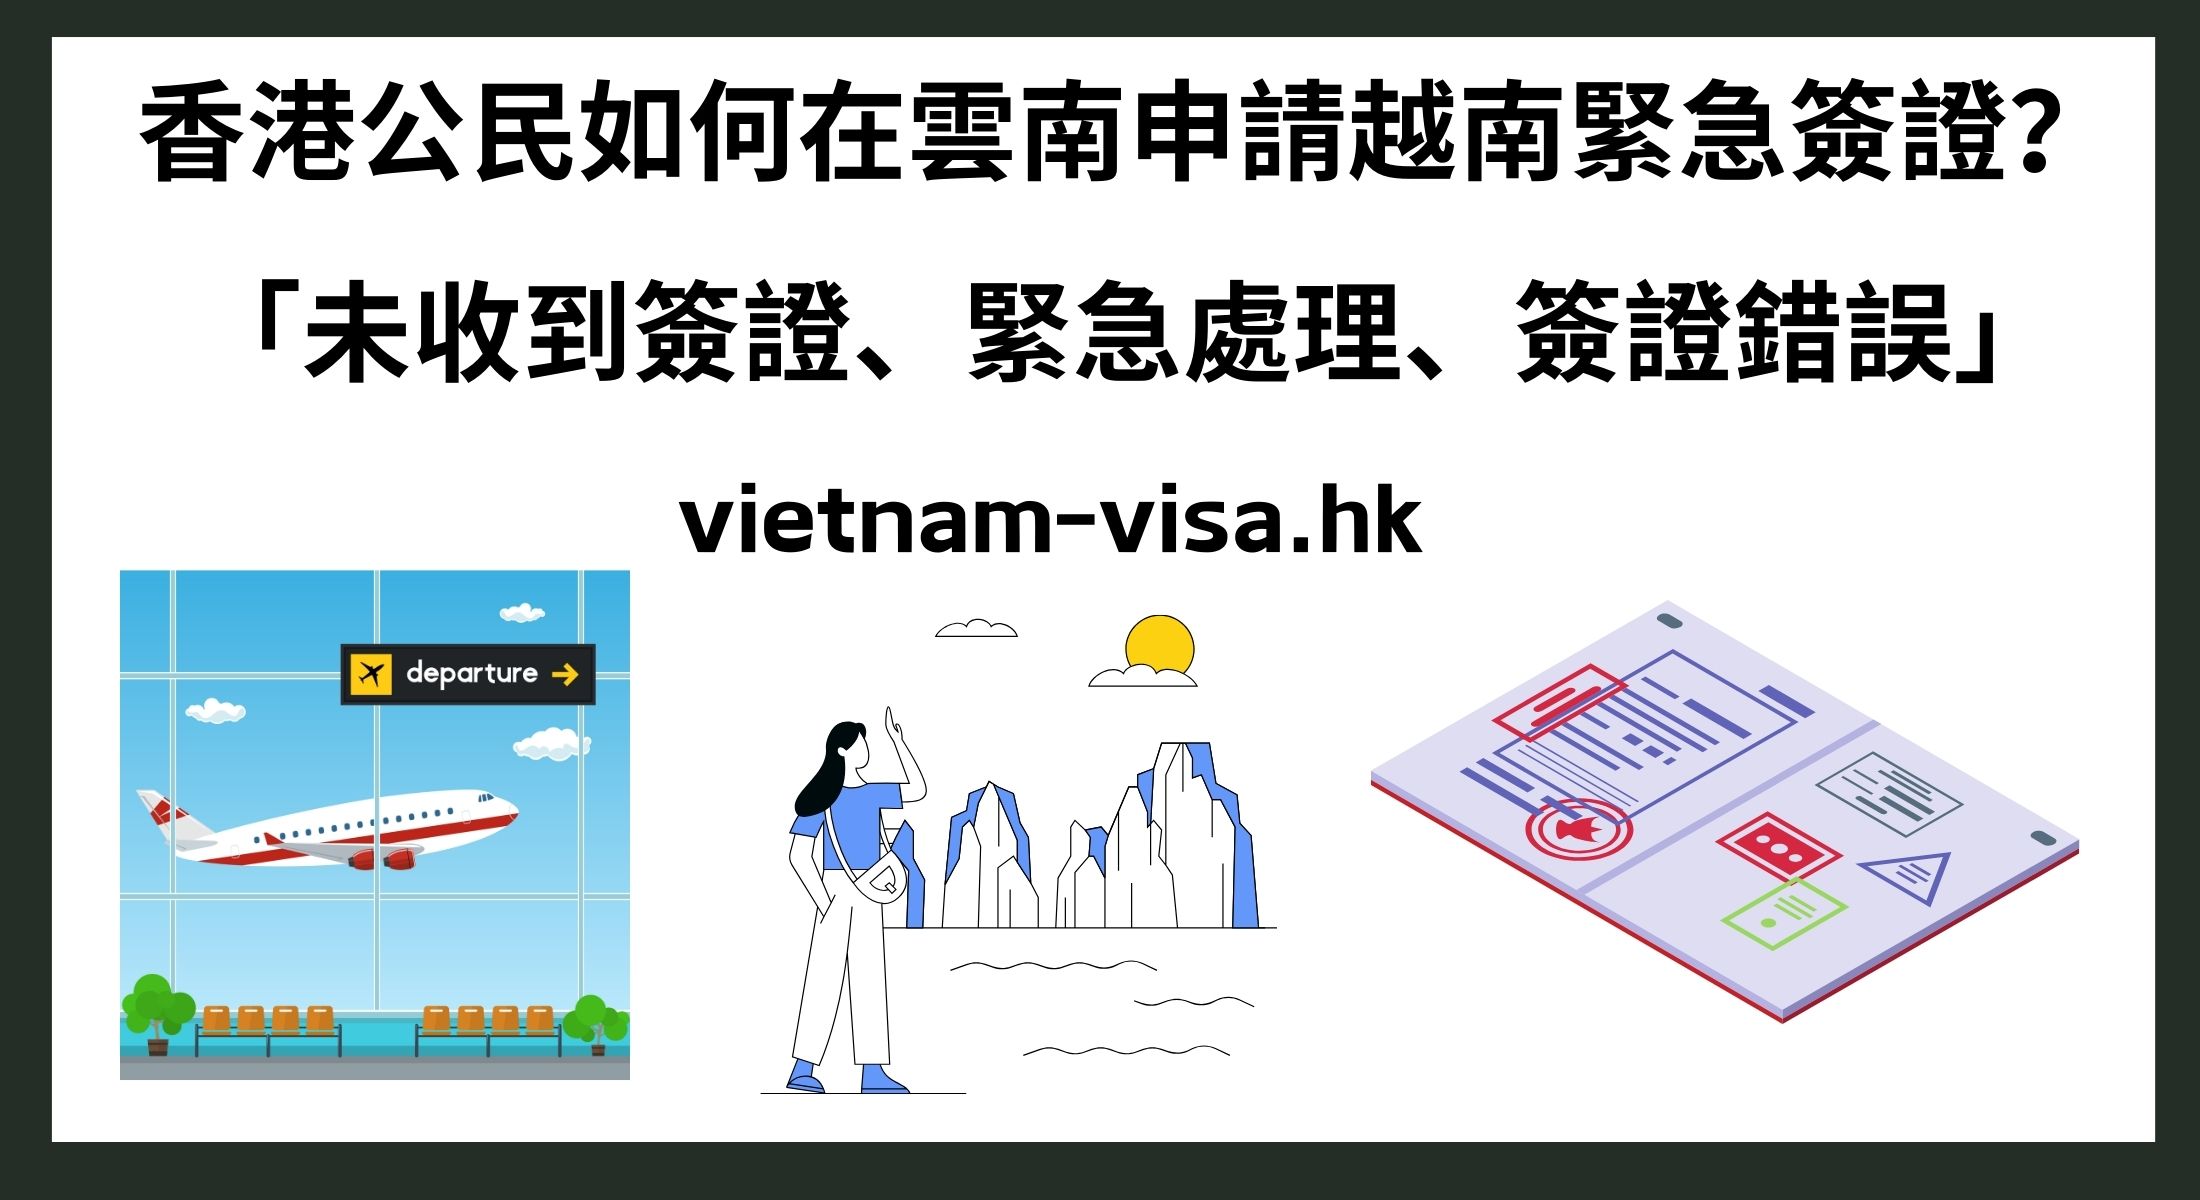 香港公民如何在雲南申請越南緊急簽證？ 「未收到簽證、緊急處理、簽證錯誤」